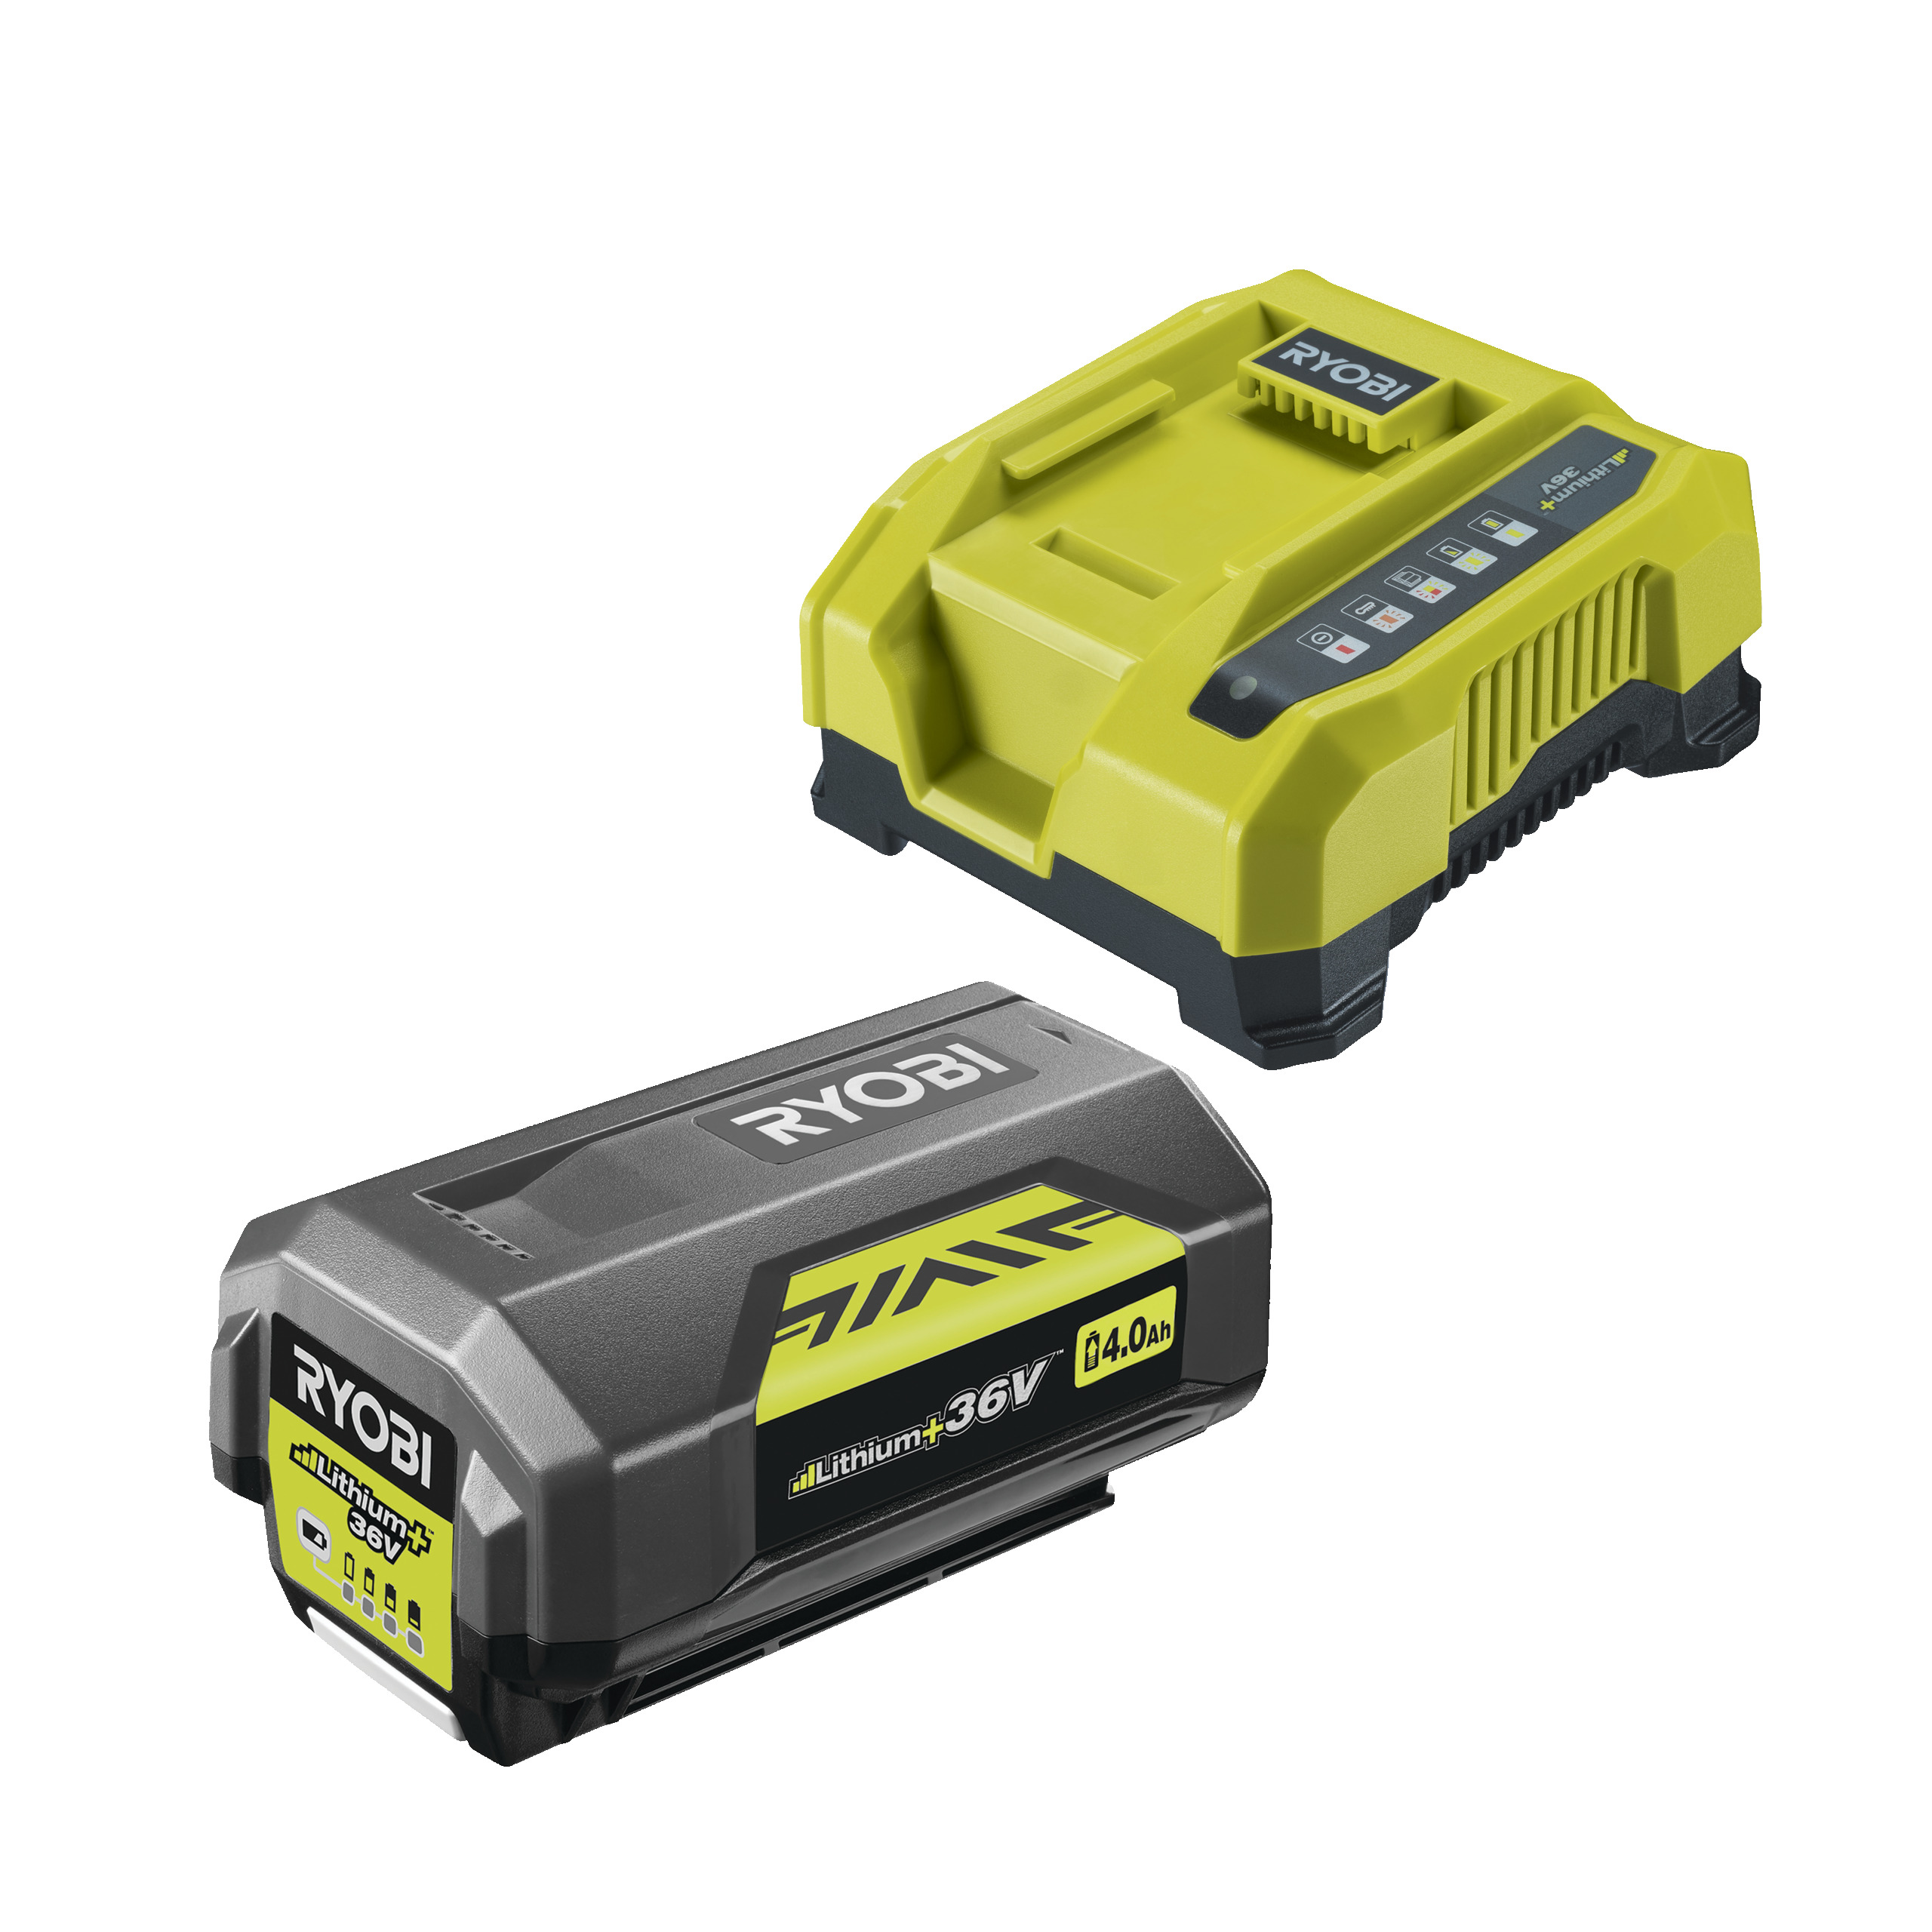 Kit Batería 36V Lithium+™ MAX POWER ™ 4.0Ah y cargador rápido (1x 4.0Ah)_hero_1